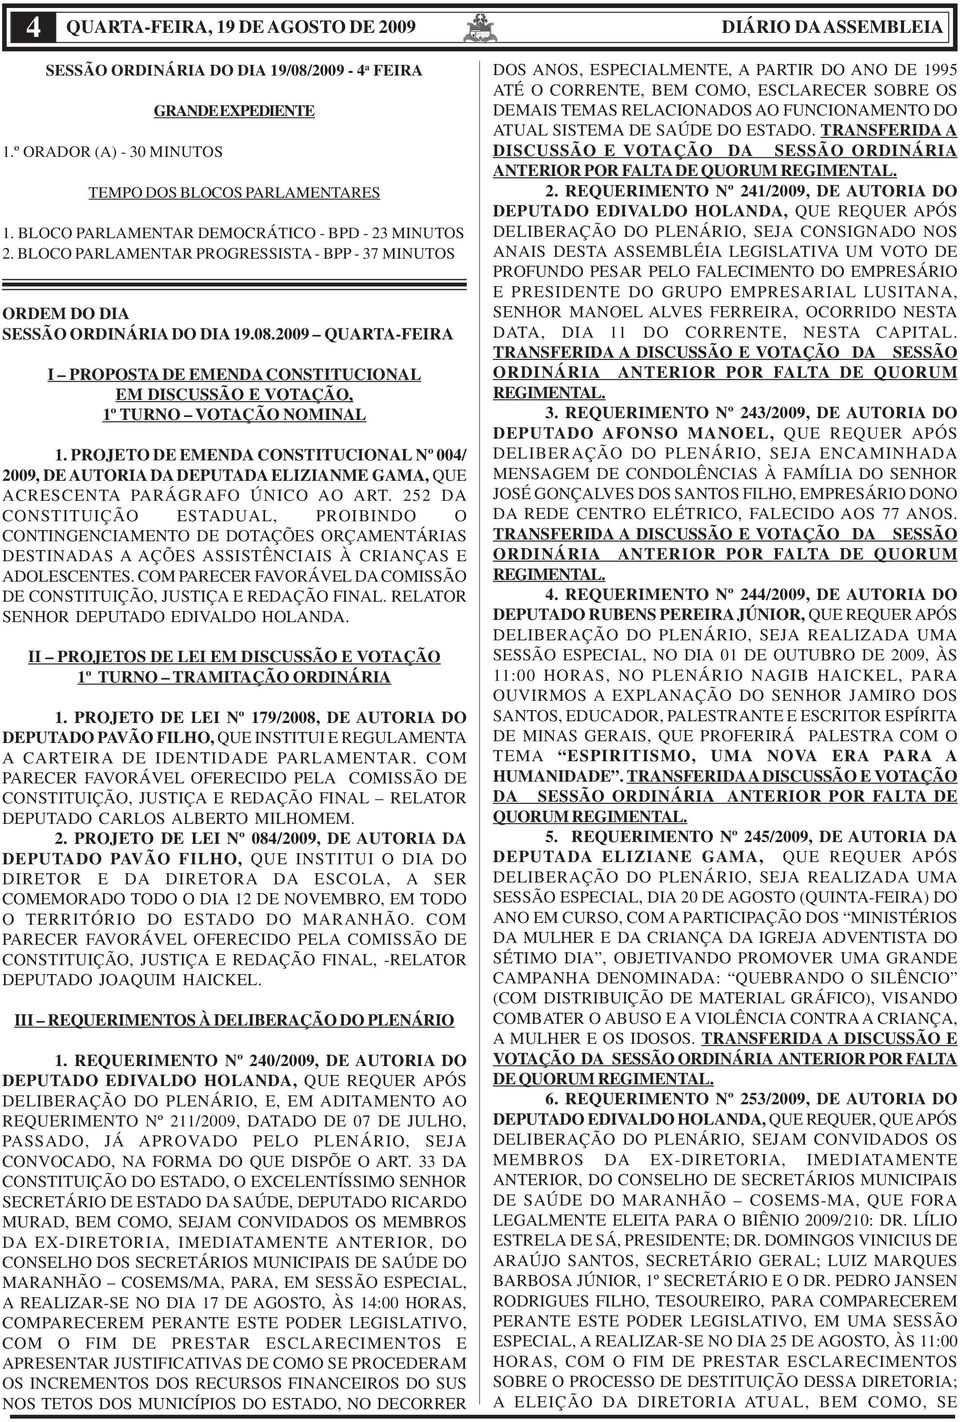 2009 QUARTA-FEIRA I PROPOSTA DE EMENDA CONSTITUCIONAL EM DISCUSSÃO E VOTAÇÃO, 1º TURNO VOTAÇÃO NOMINAL 1.